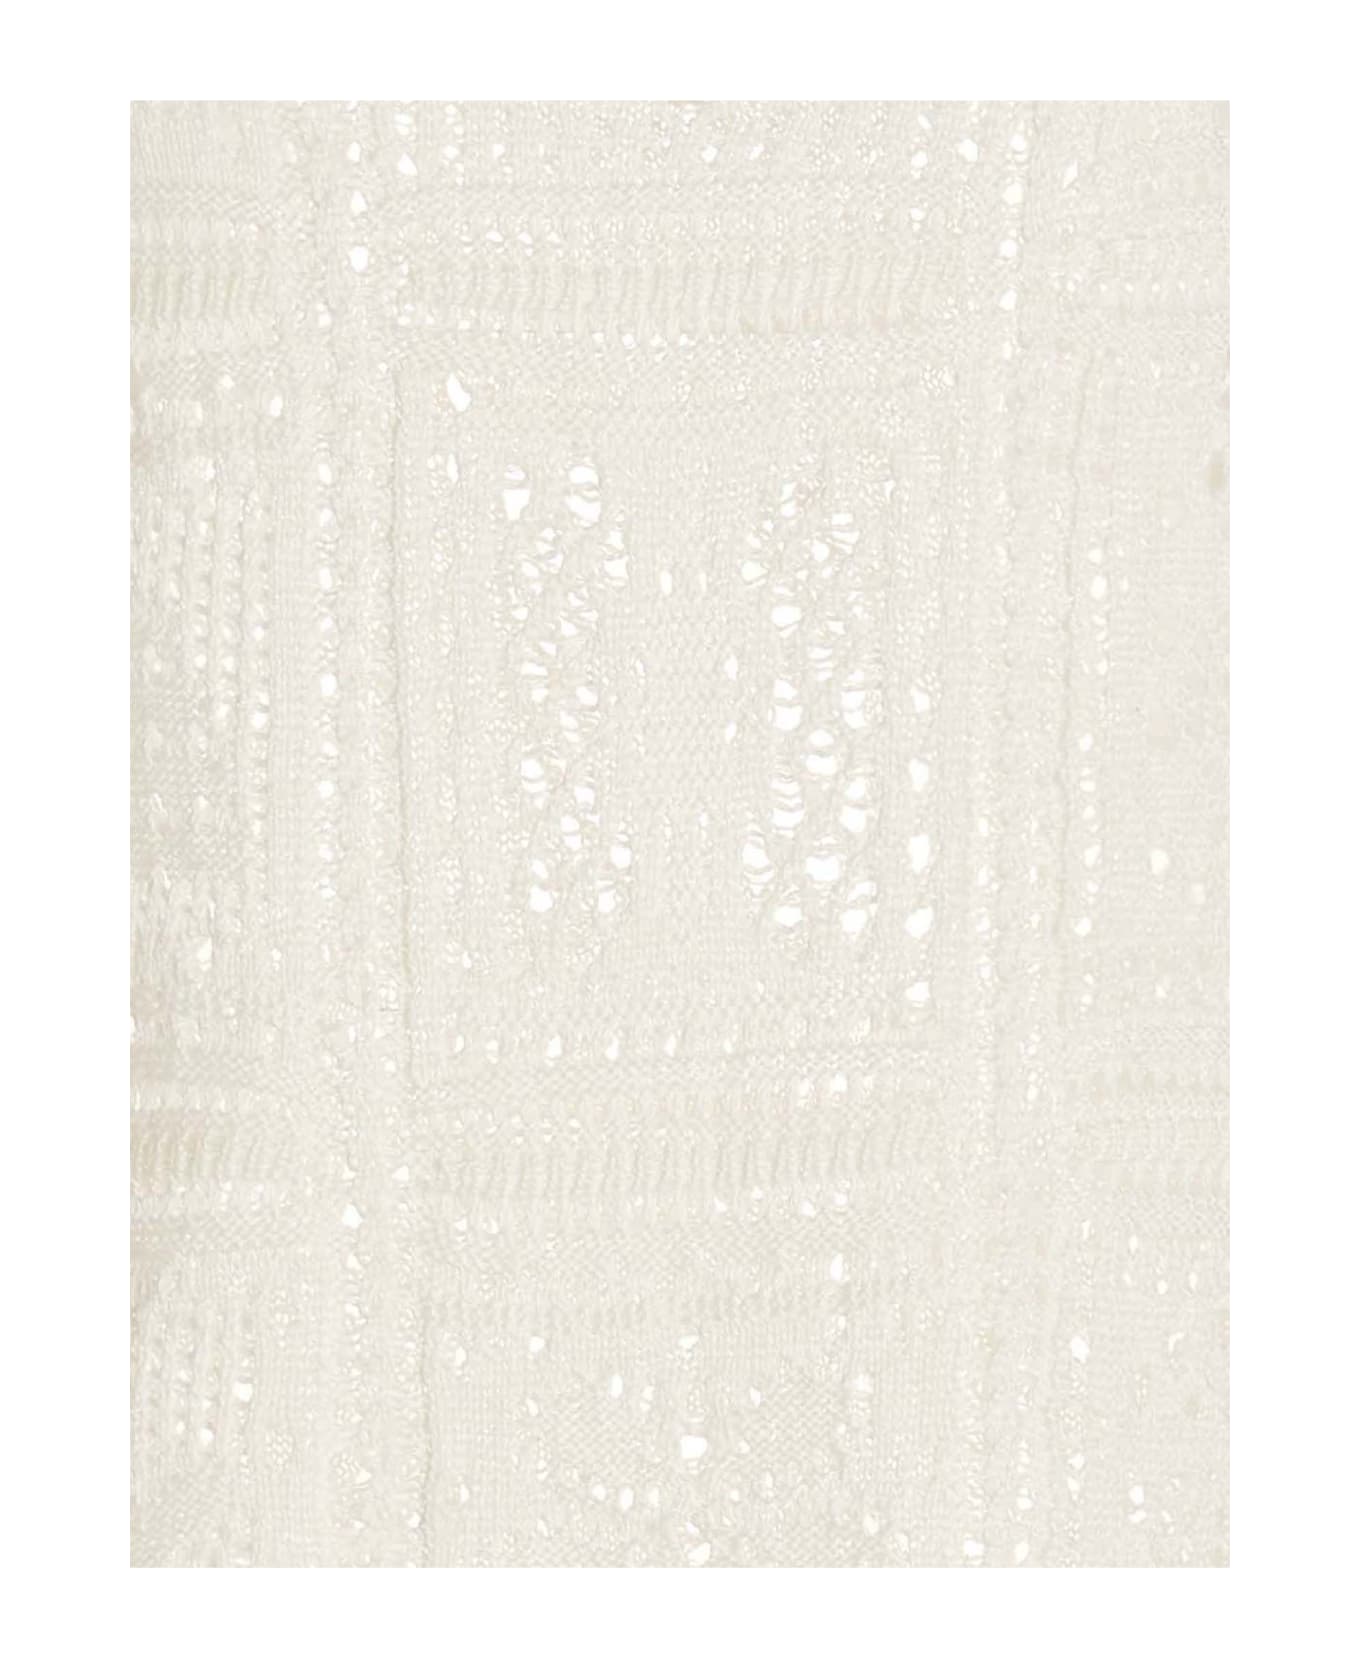 Avril8790 Crochet Top Tank - White